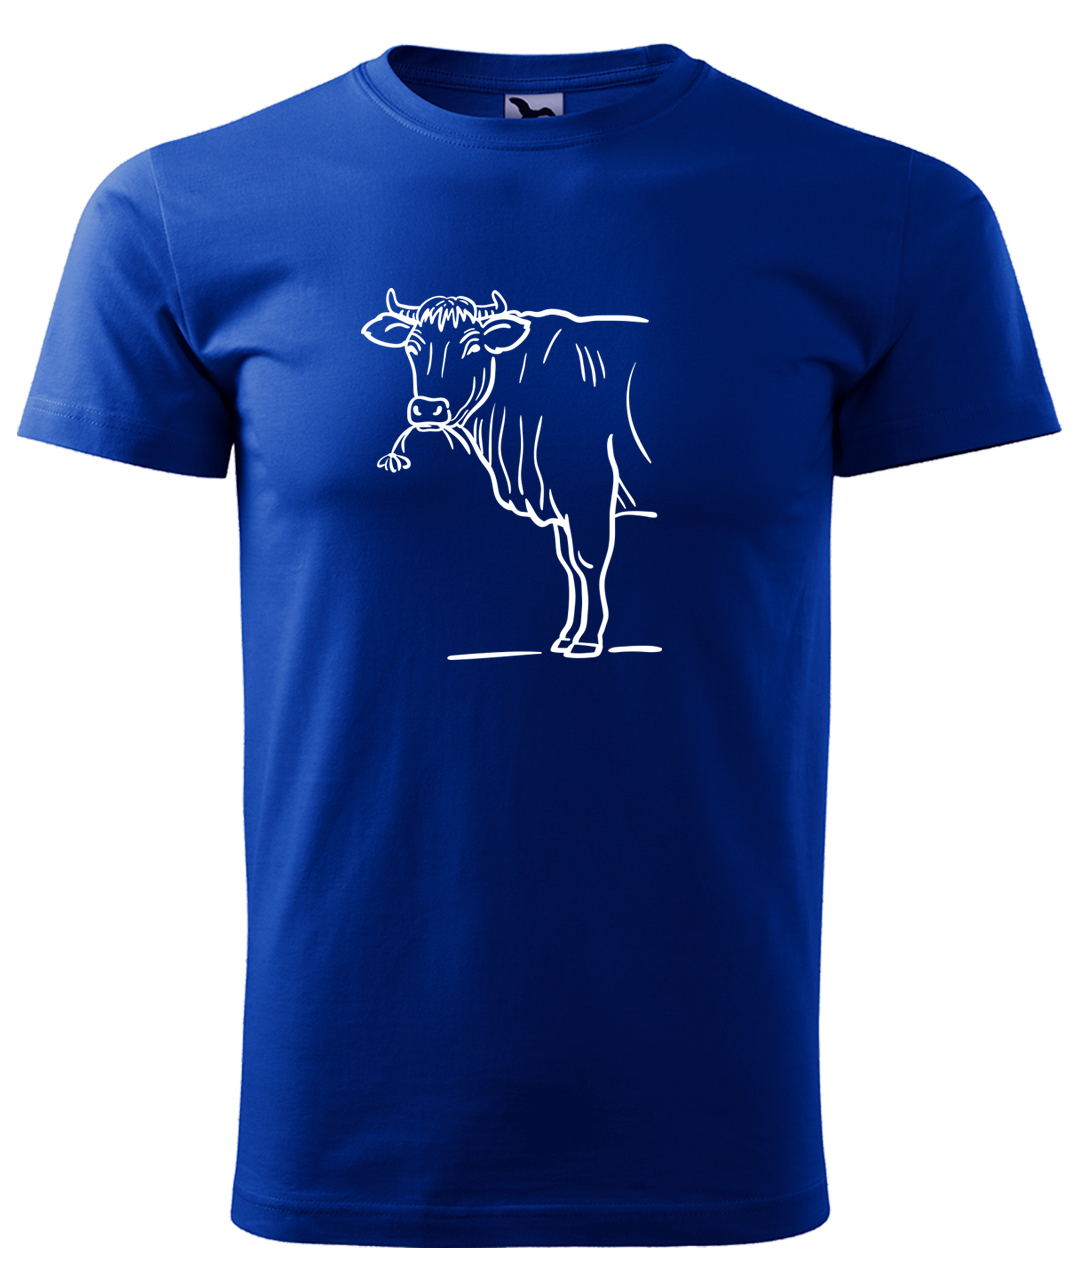 Dětské tričko s krávou - Býk Velikost: 4 roky / 110 cm, Barva: Královská modrá (05), Délka rukávu: Krátký rukáv